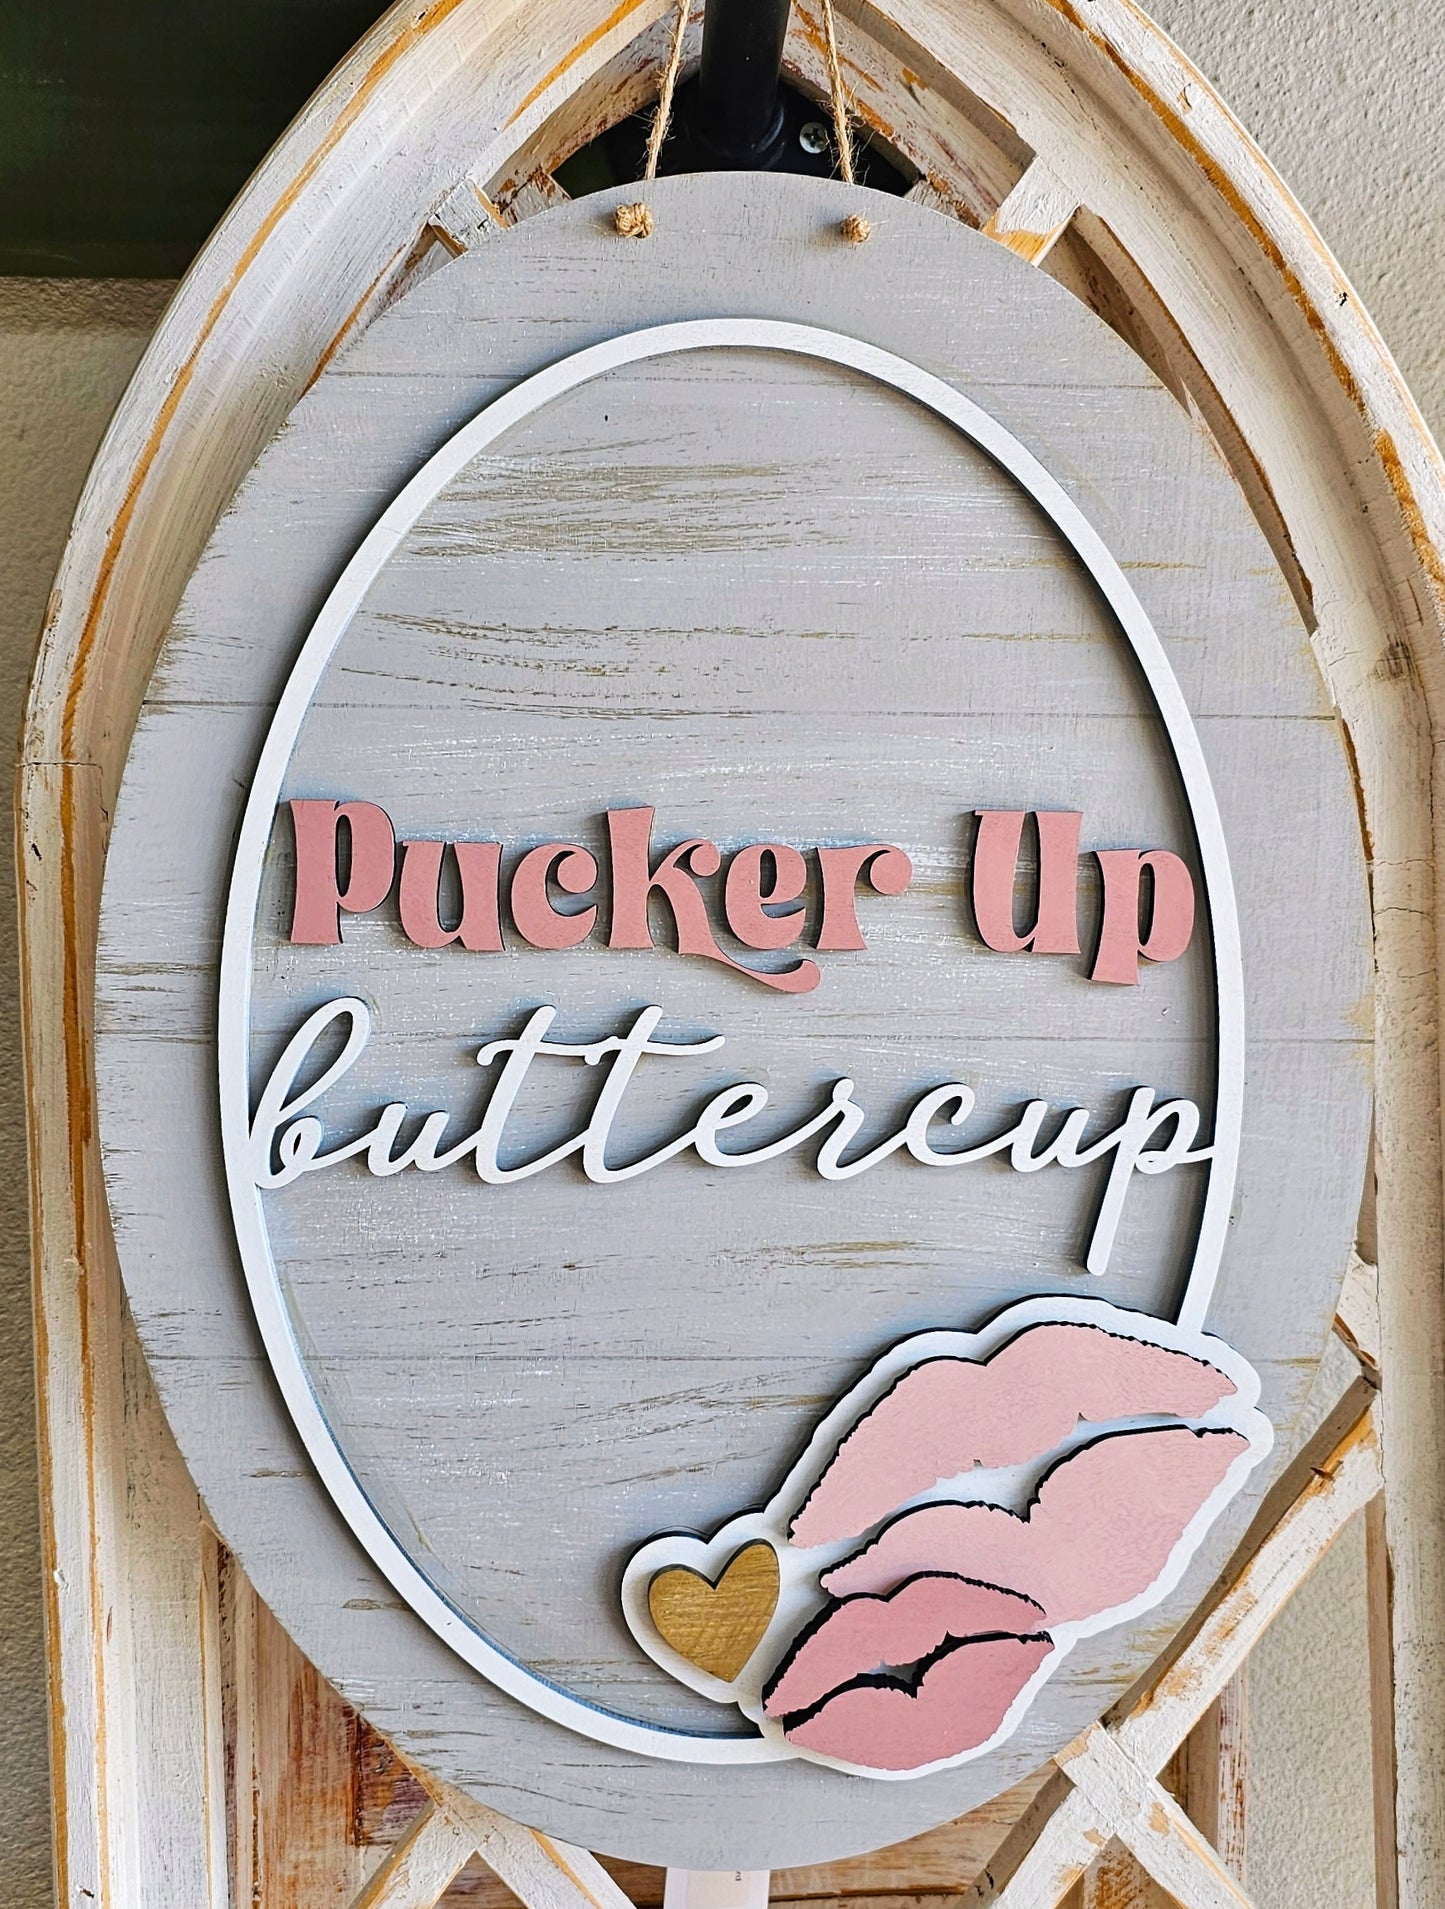 Pucker up buttercup:3D oval door hanger A5617N